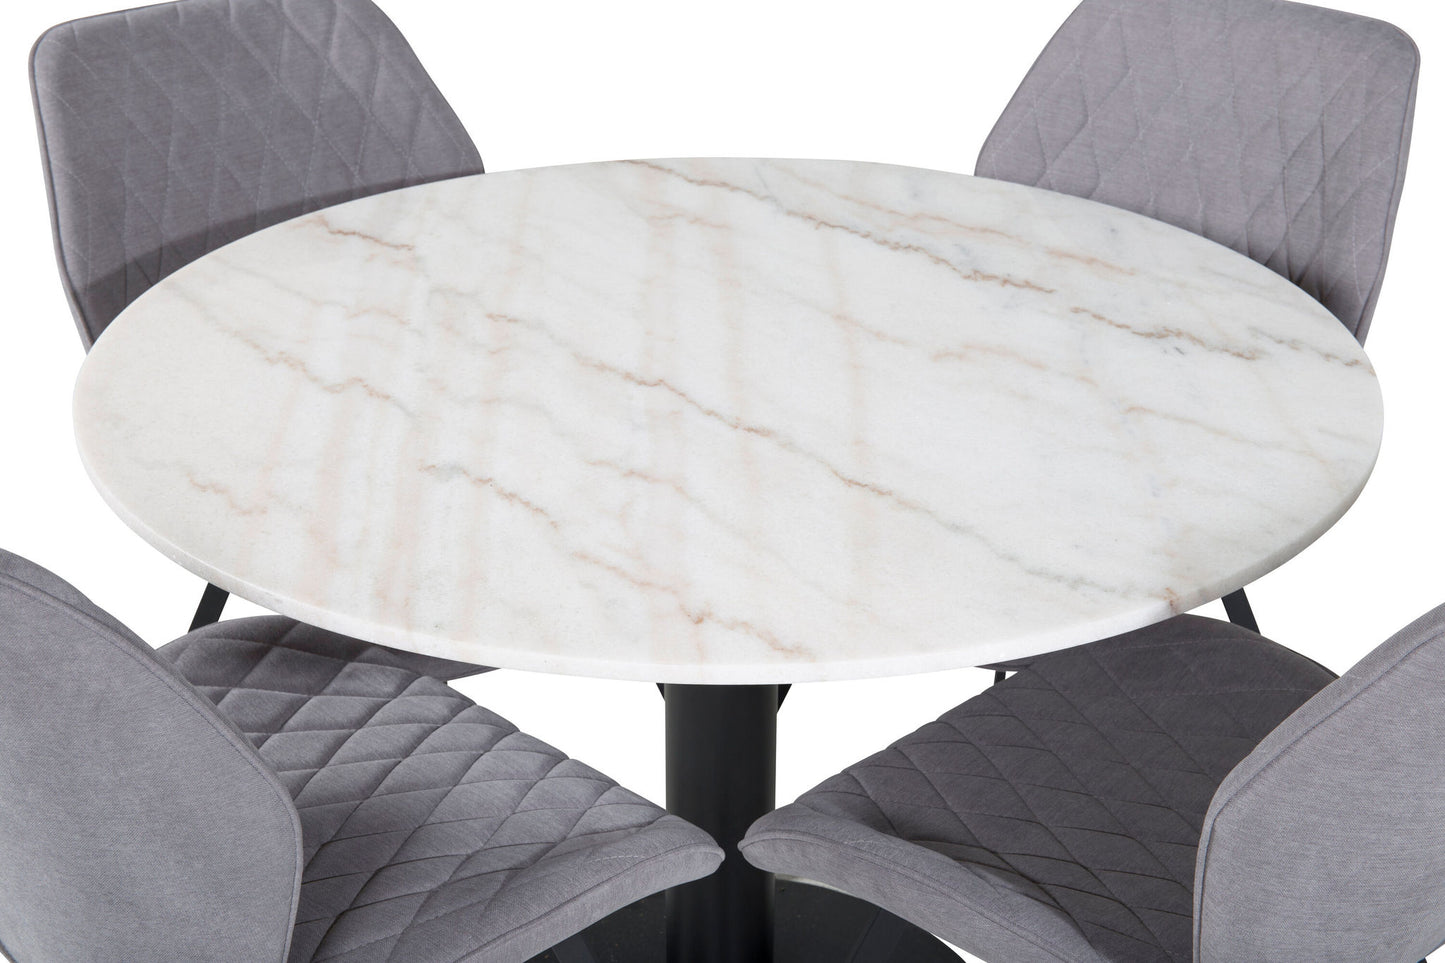 Estelle - Rundt spisebord, ø106 H75 - Hvid / Sort+Gemma Spisebordsstol - Sorte ben - Gråt stof